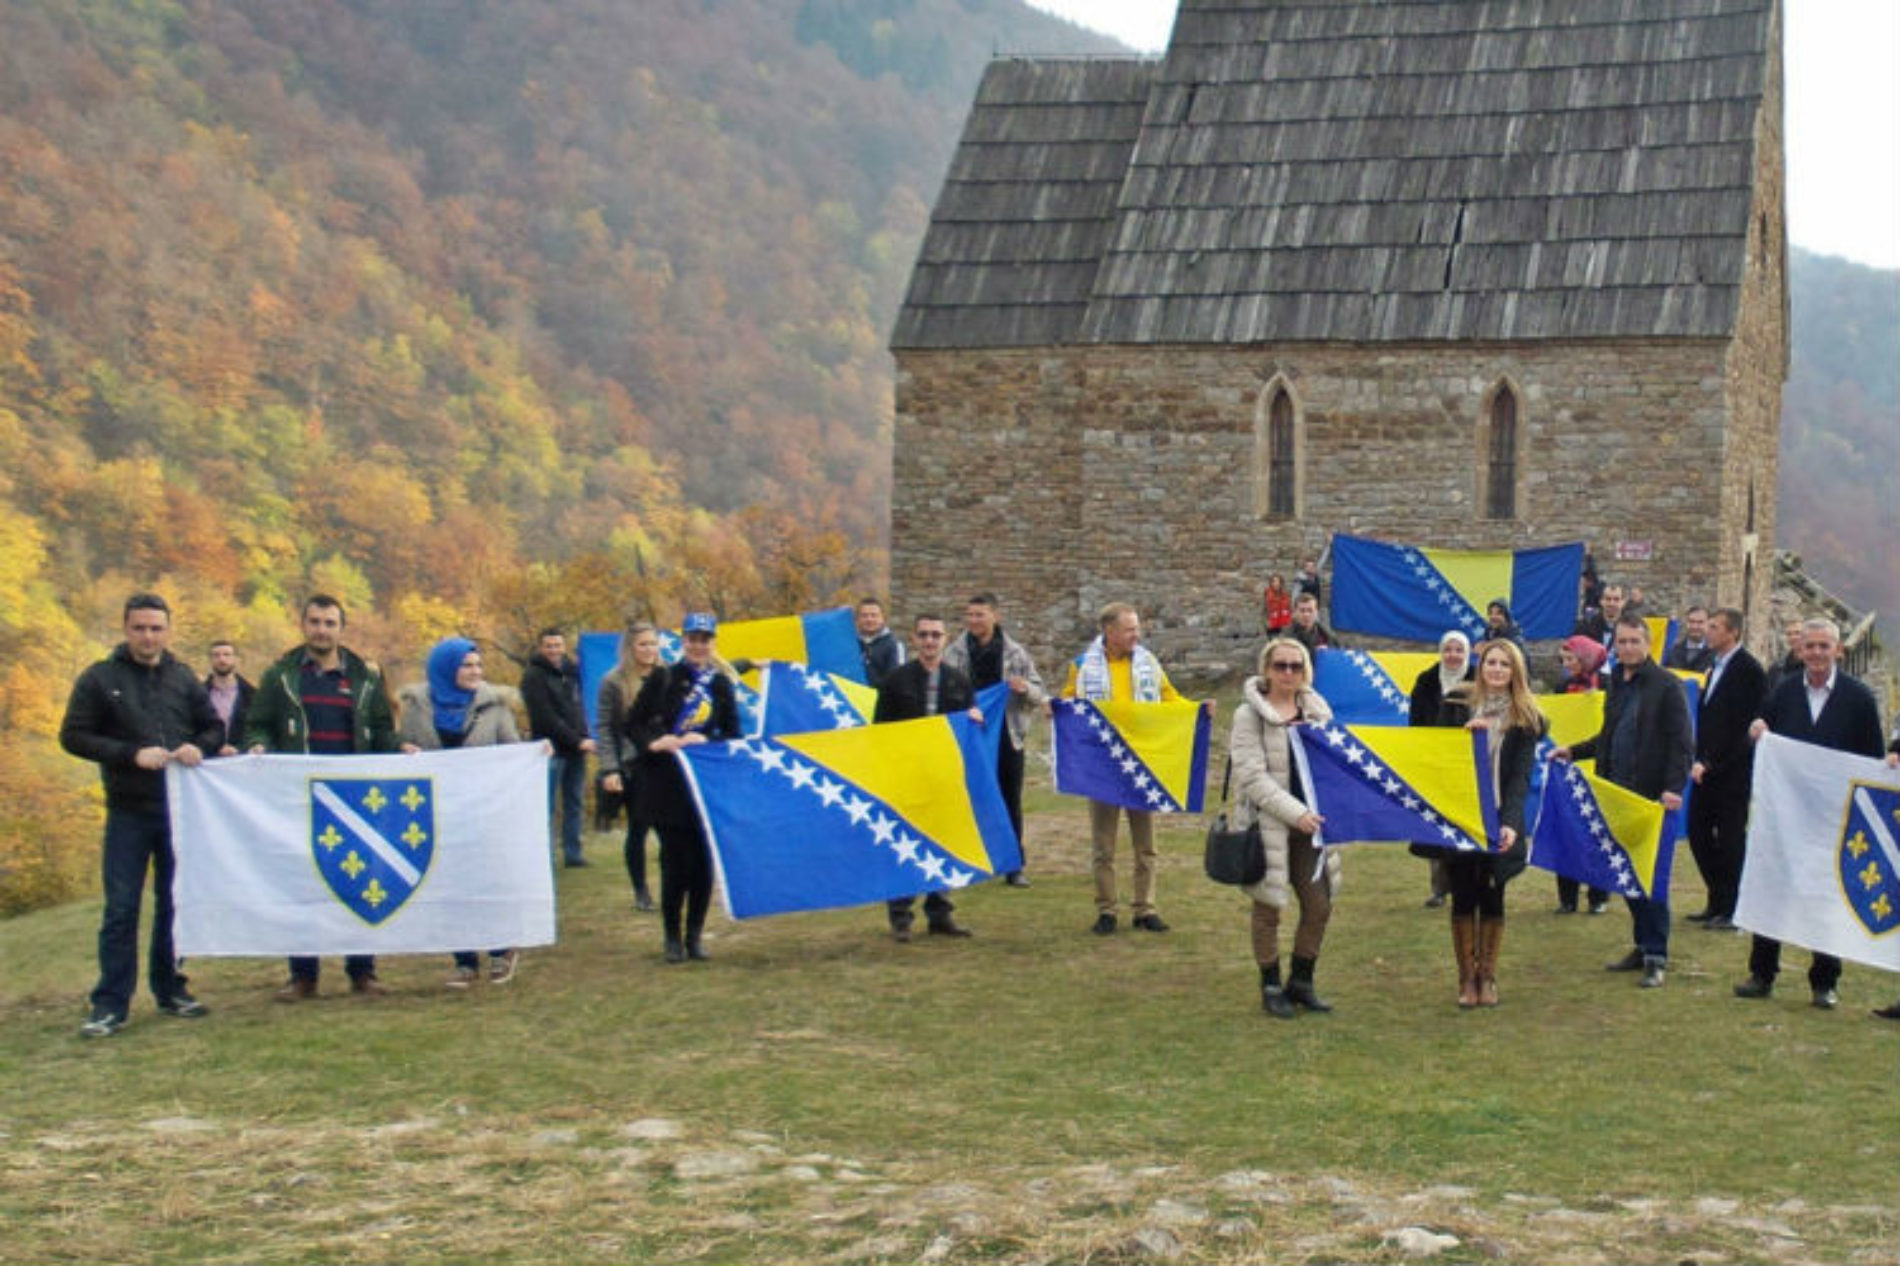 Tragovima bosanskog kraljevstva: Od Bobovca do Bilinog polja – podrška za ‘Zmajeve’